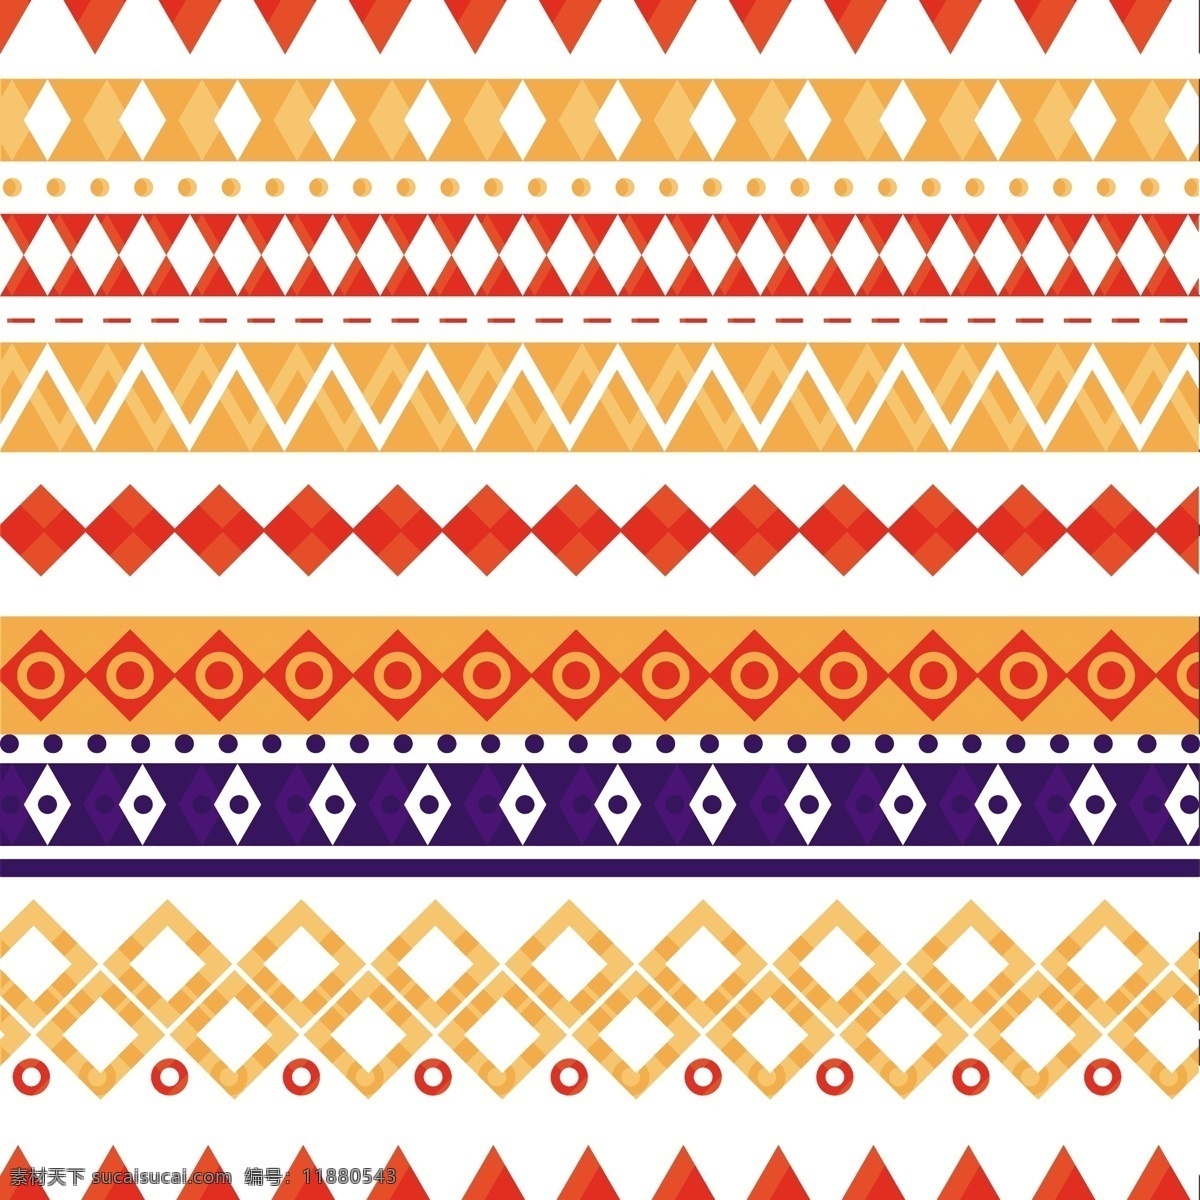 阿兹 台 克 模式 向量 阿兹台克 格局 特克 图案 阿兹特克壁纸 民族 几何装饰 丰富多彩 阿兹特克图案 克人 背景 边境 本地模式 边框图案 边框